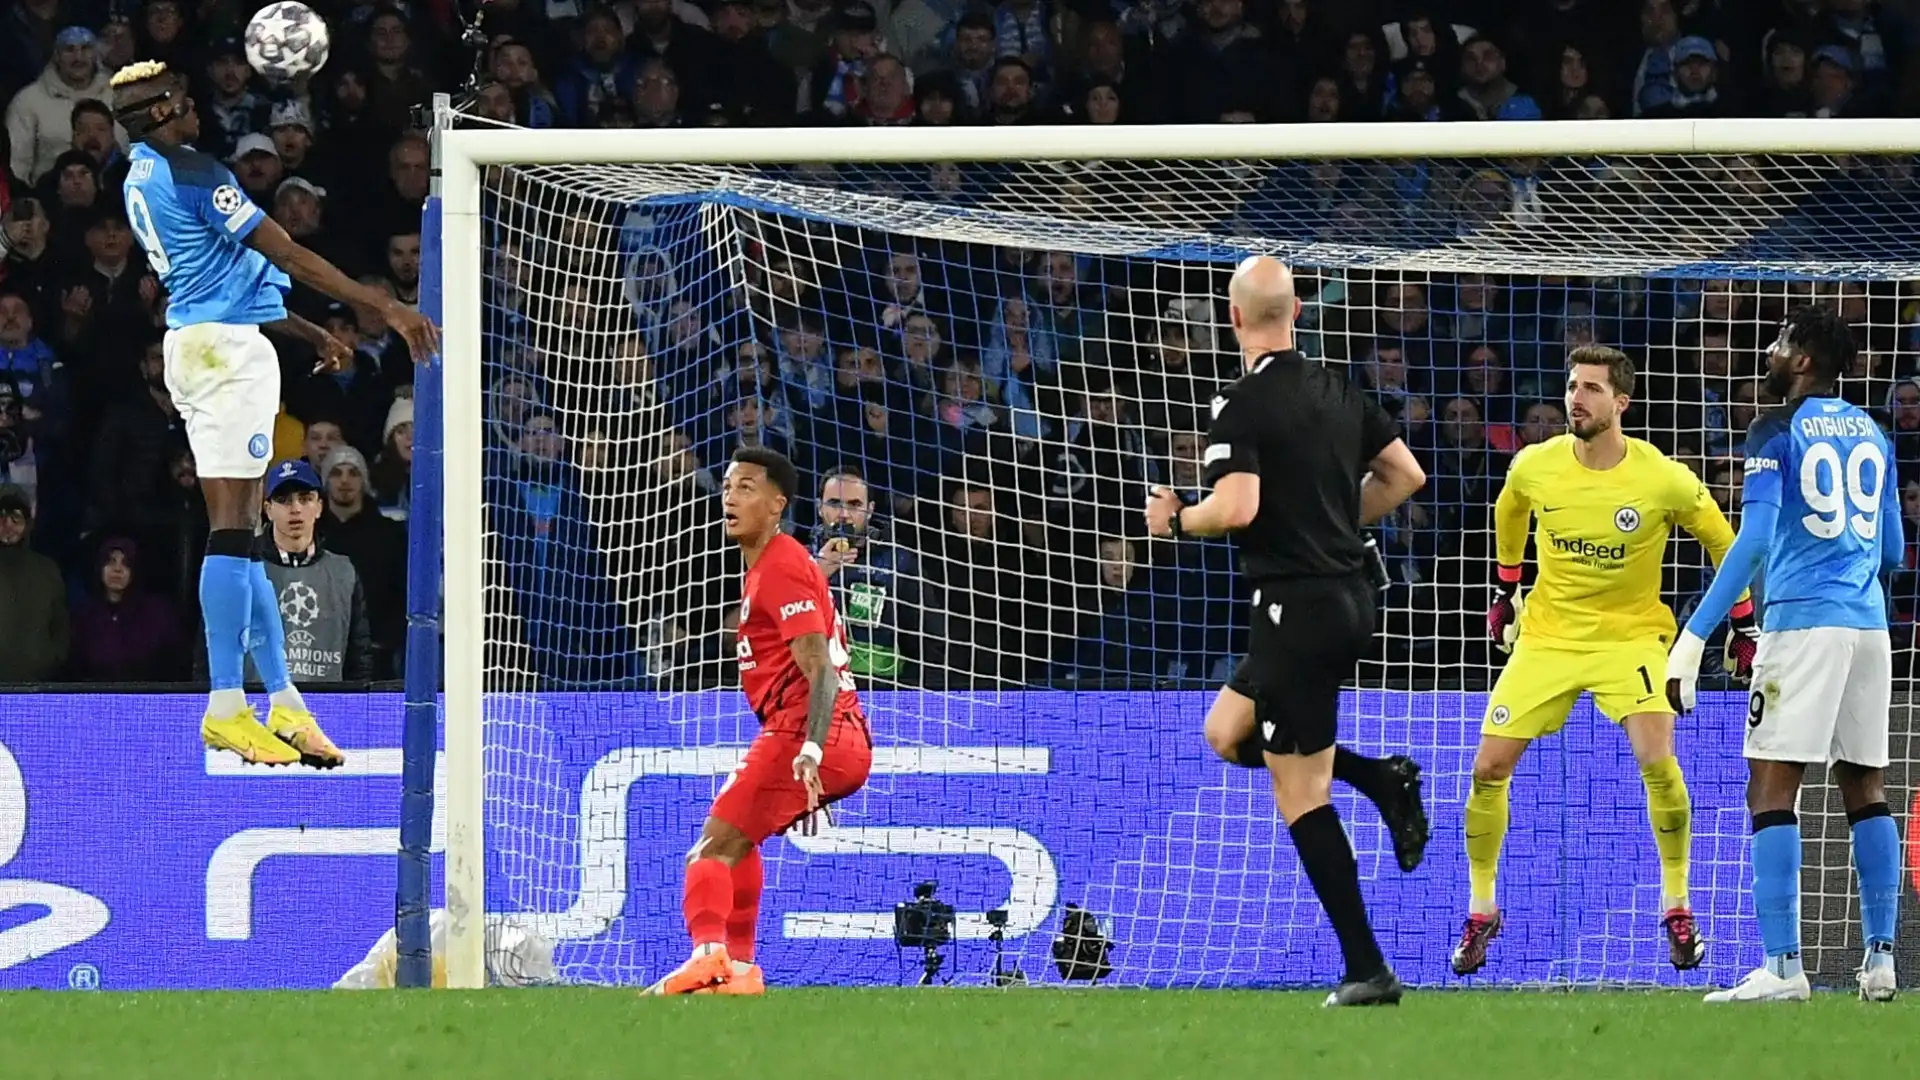 Il Napoli batte l'Eintracht Francoforte e conquista per la prima volta nella sua storia i quarti di finale di Champions League.